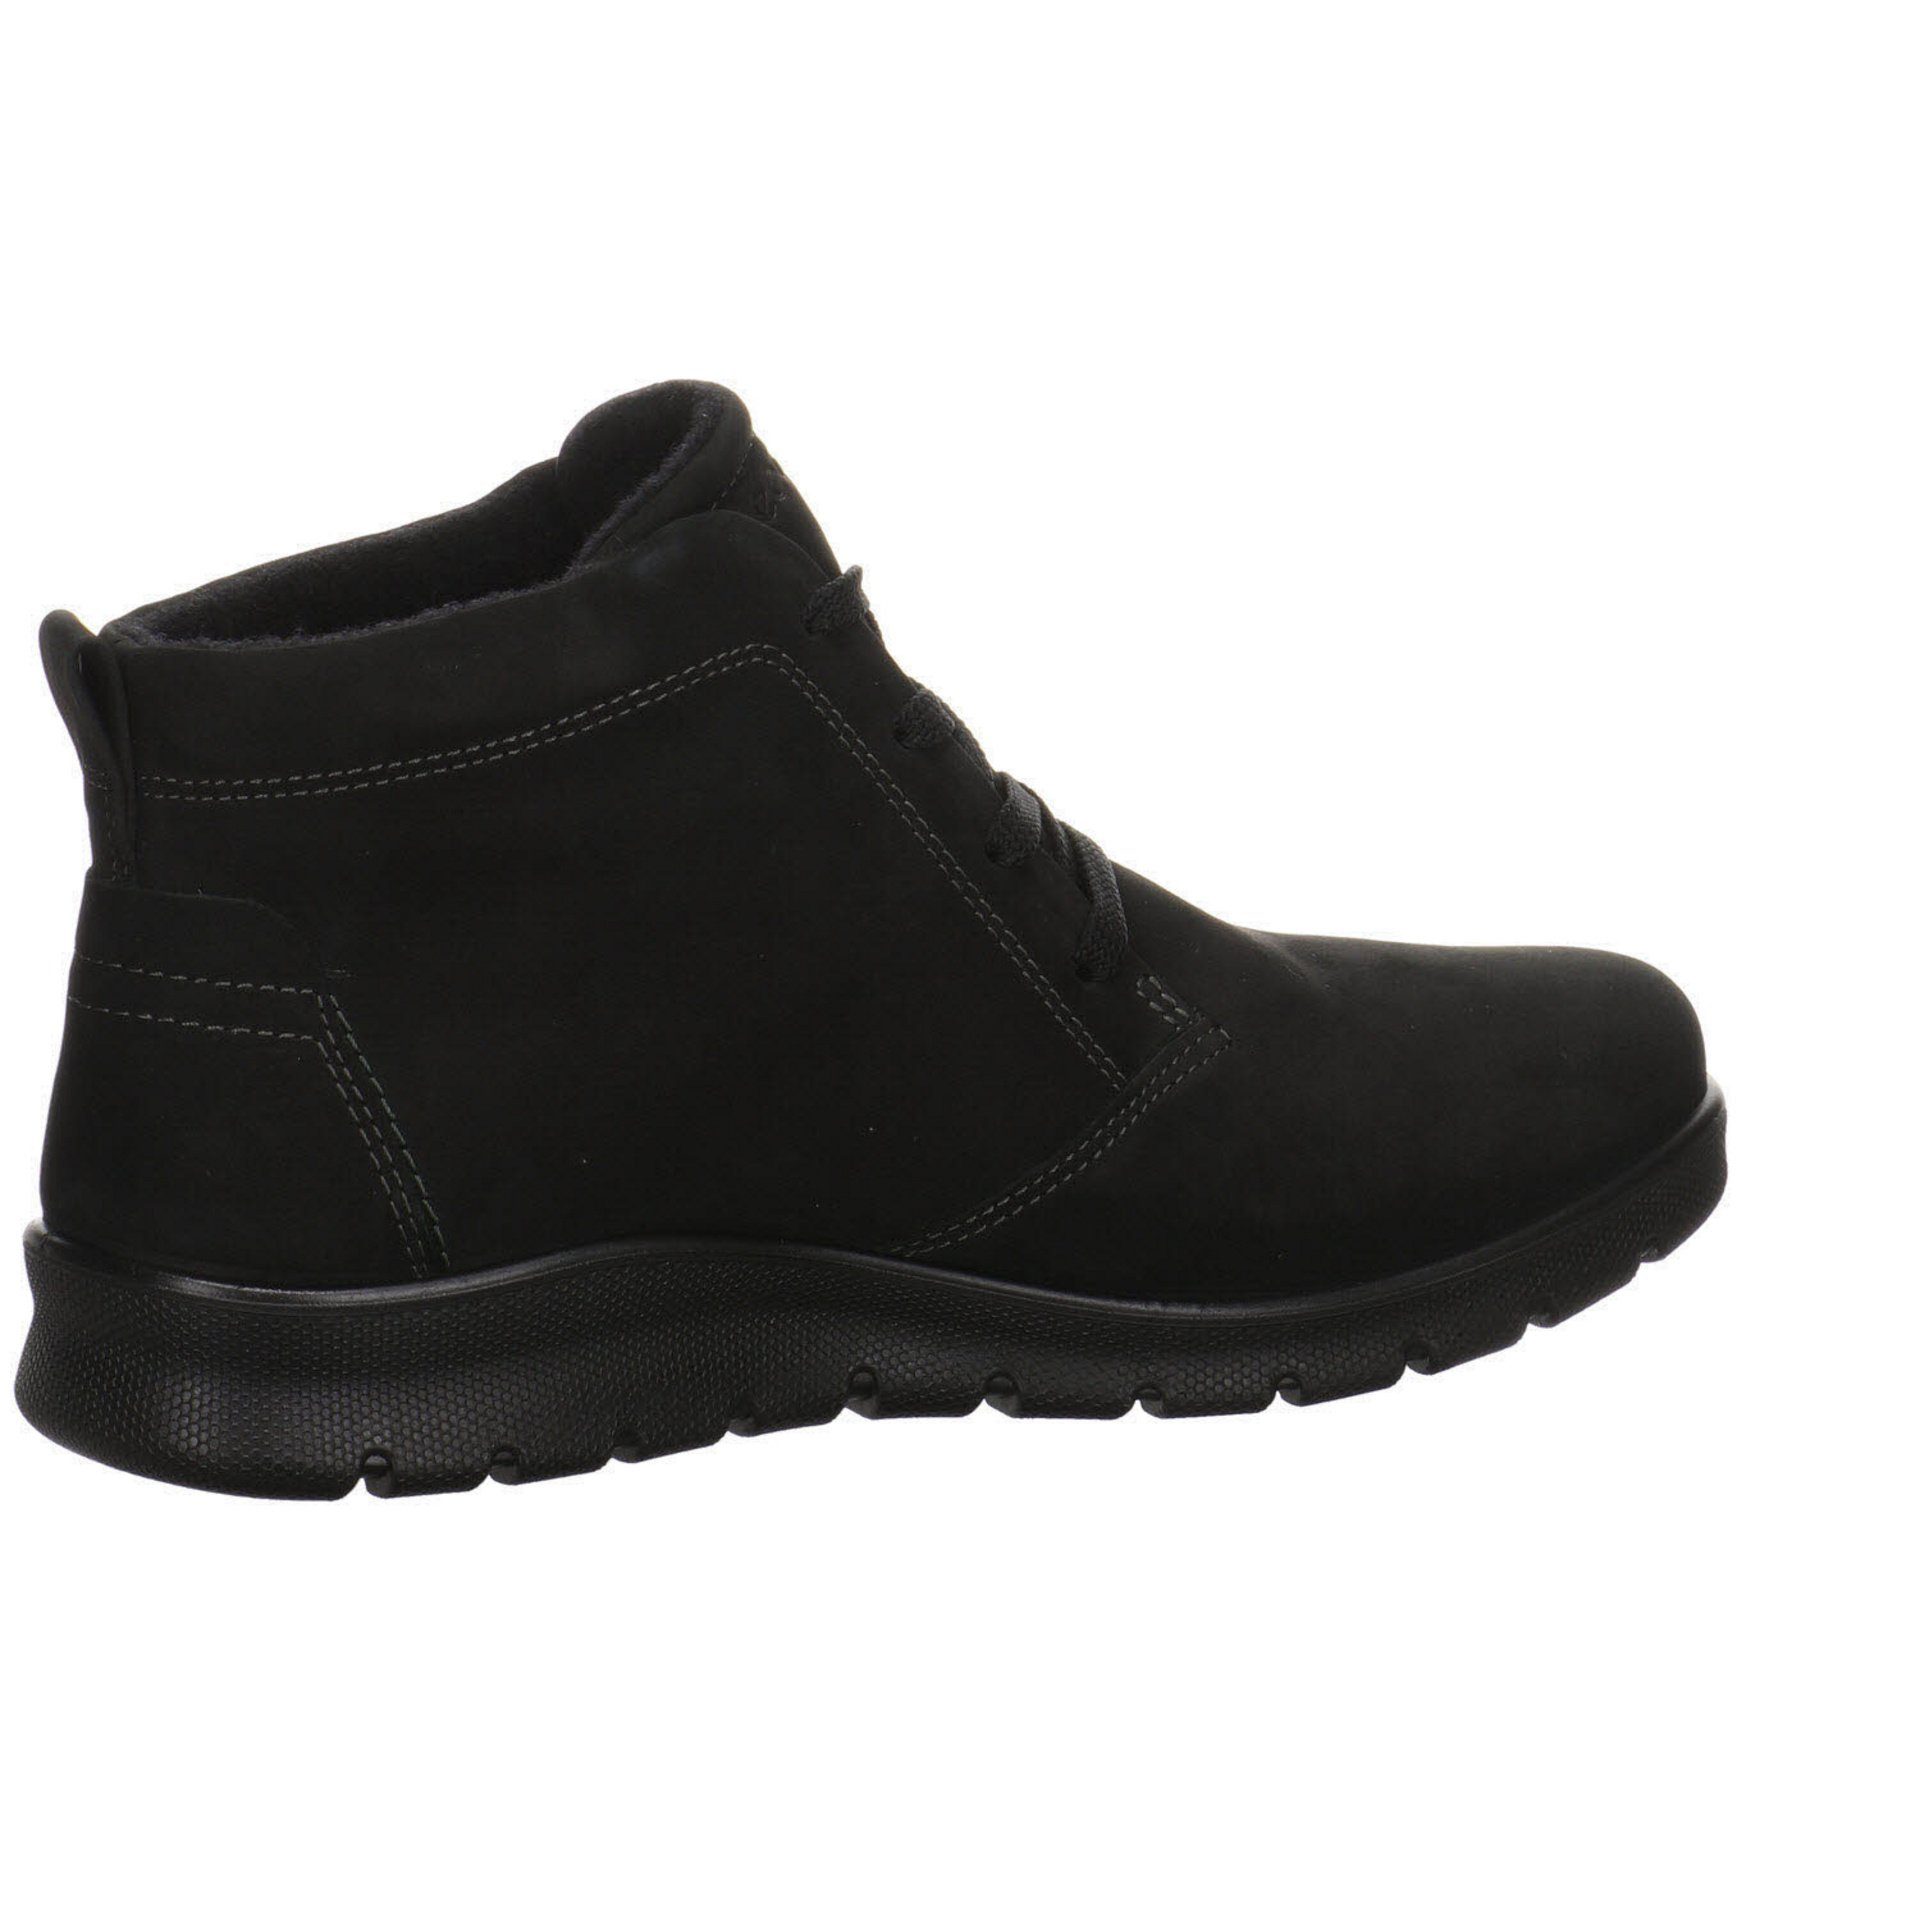 Schuhe Boots Stiefeletten black Babett Schnürstiefelette Damen Ecco Nubukleder